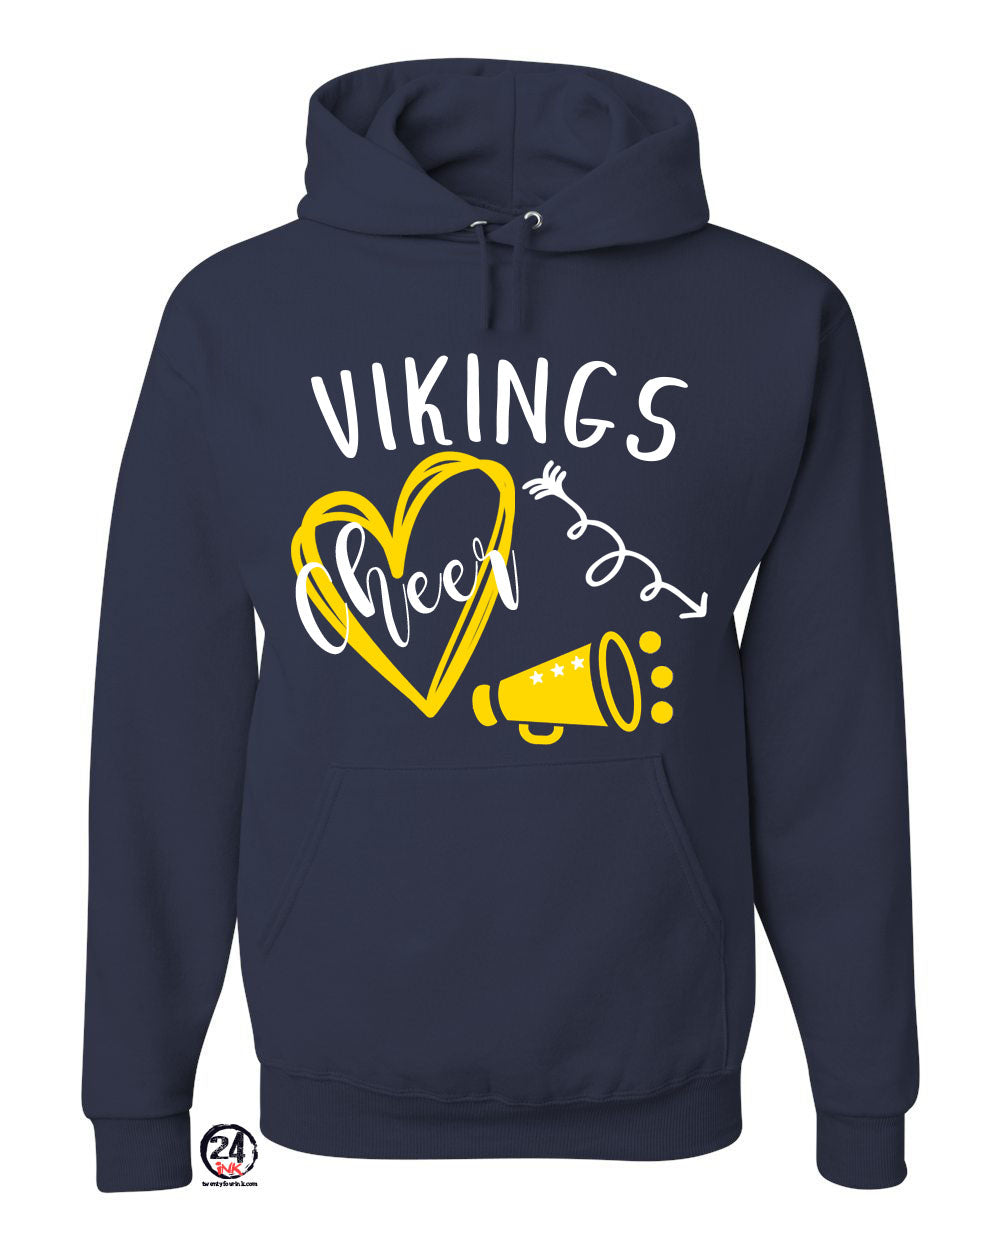 Vikings Cheer design 3 Hooded Sweatshirt